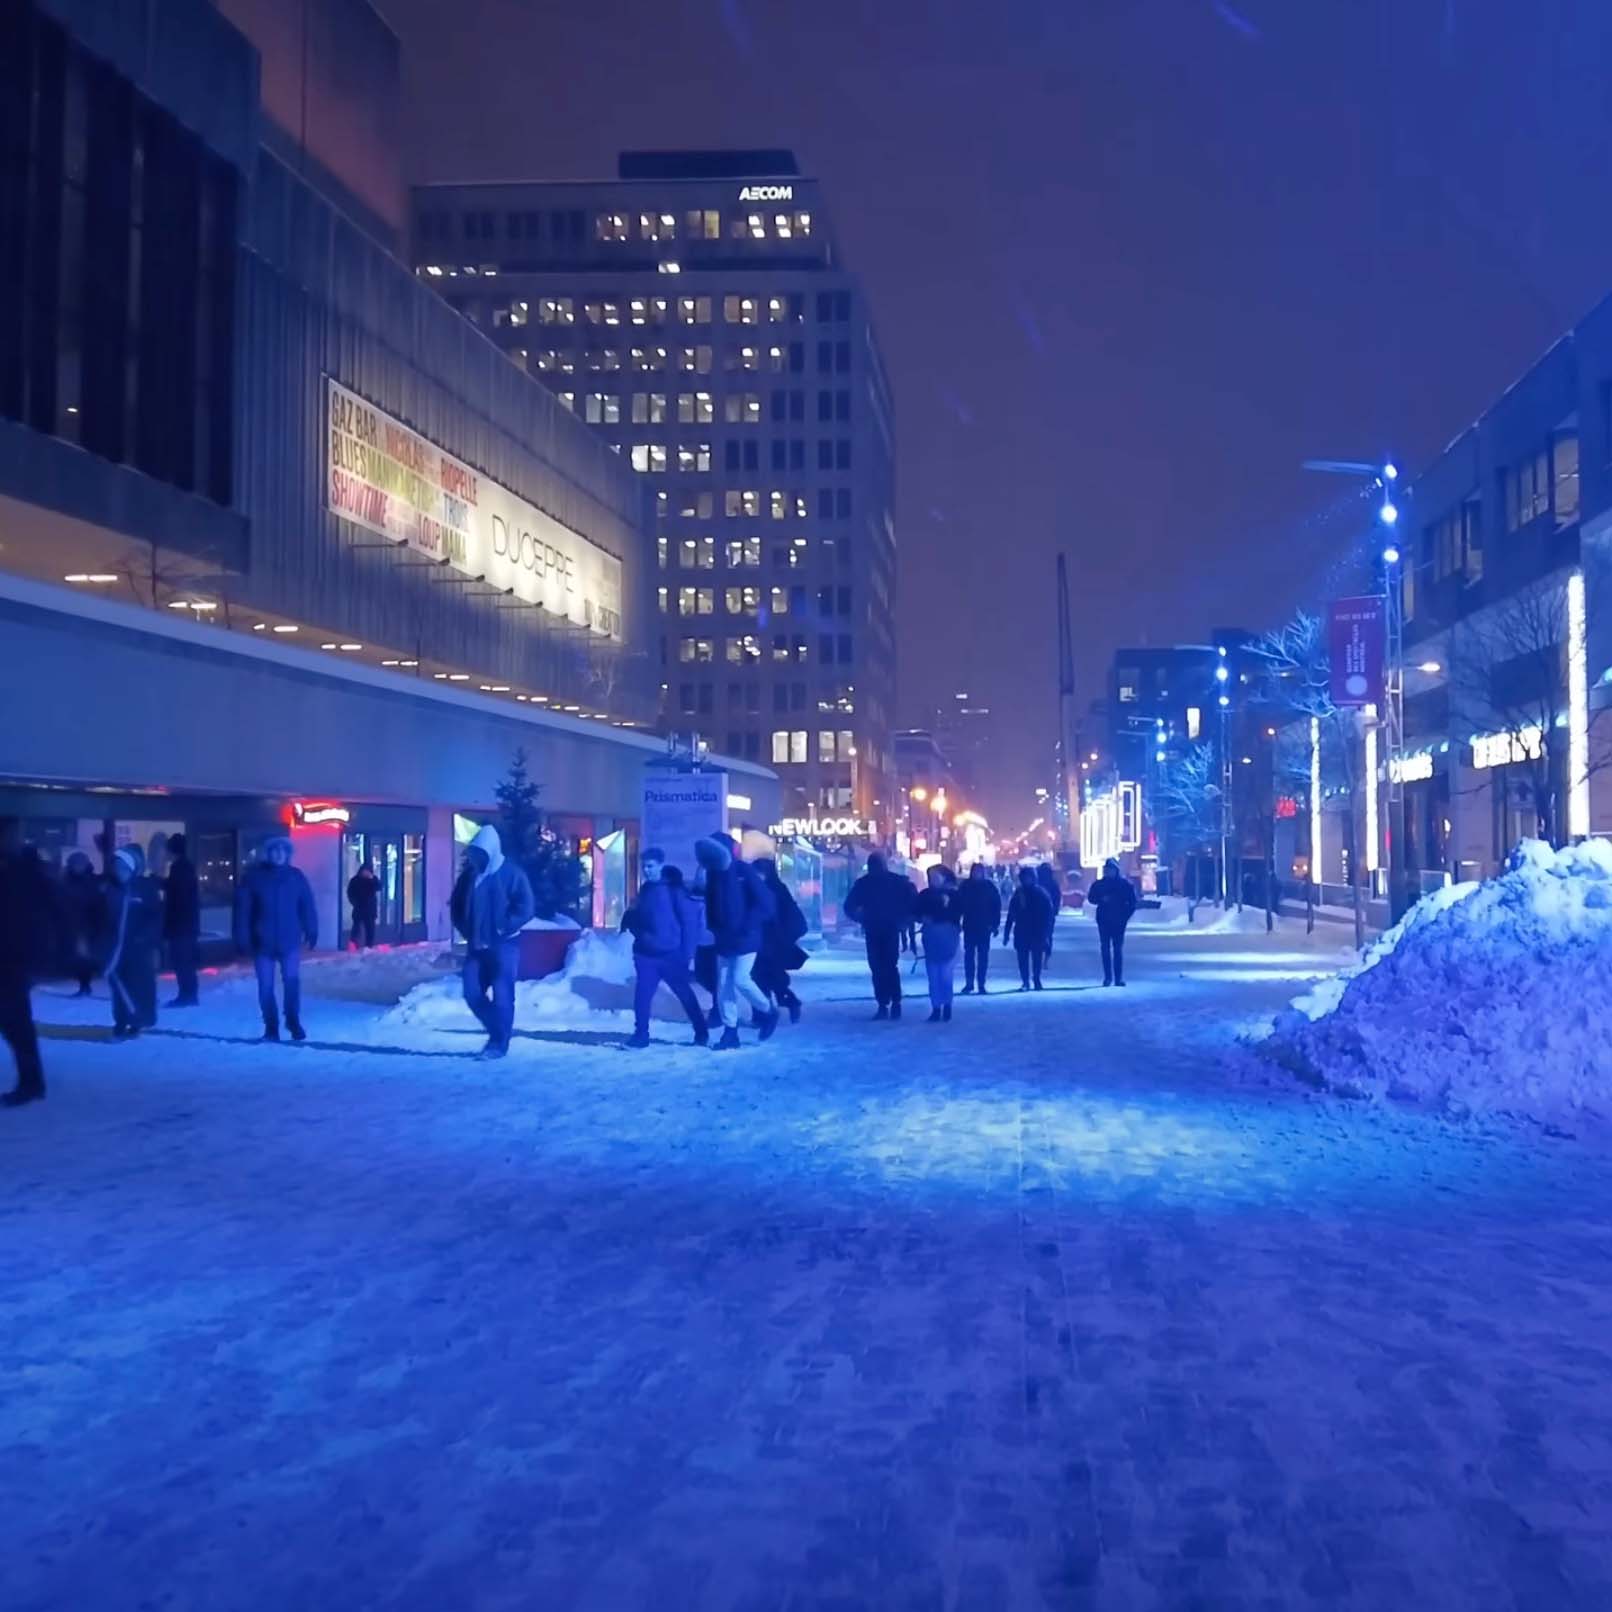 Une nuit d'hiver sur la zone piétonne de la rue Sainte-Catherine. La rue est éclairée par des lumières bleues intenses. Les gens marchent devant l'entrée de la Place des arts. Un tas de neige est soigneusement poussé sur le côté.